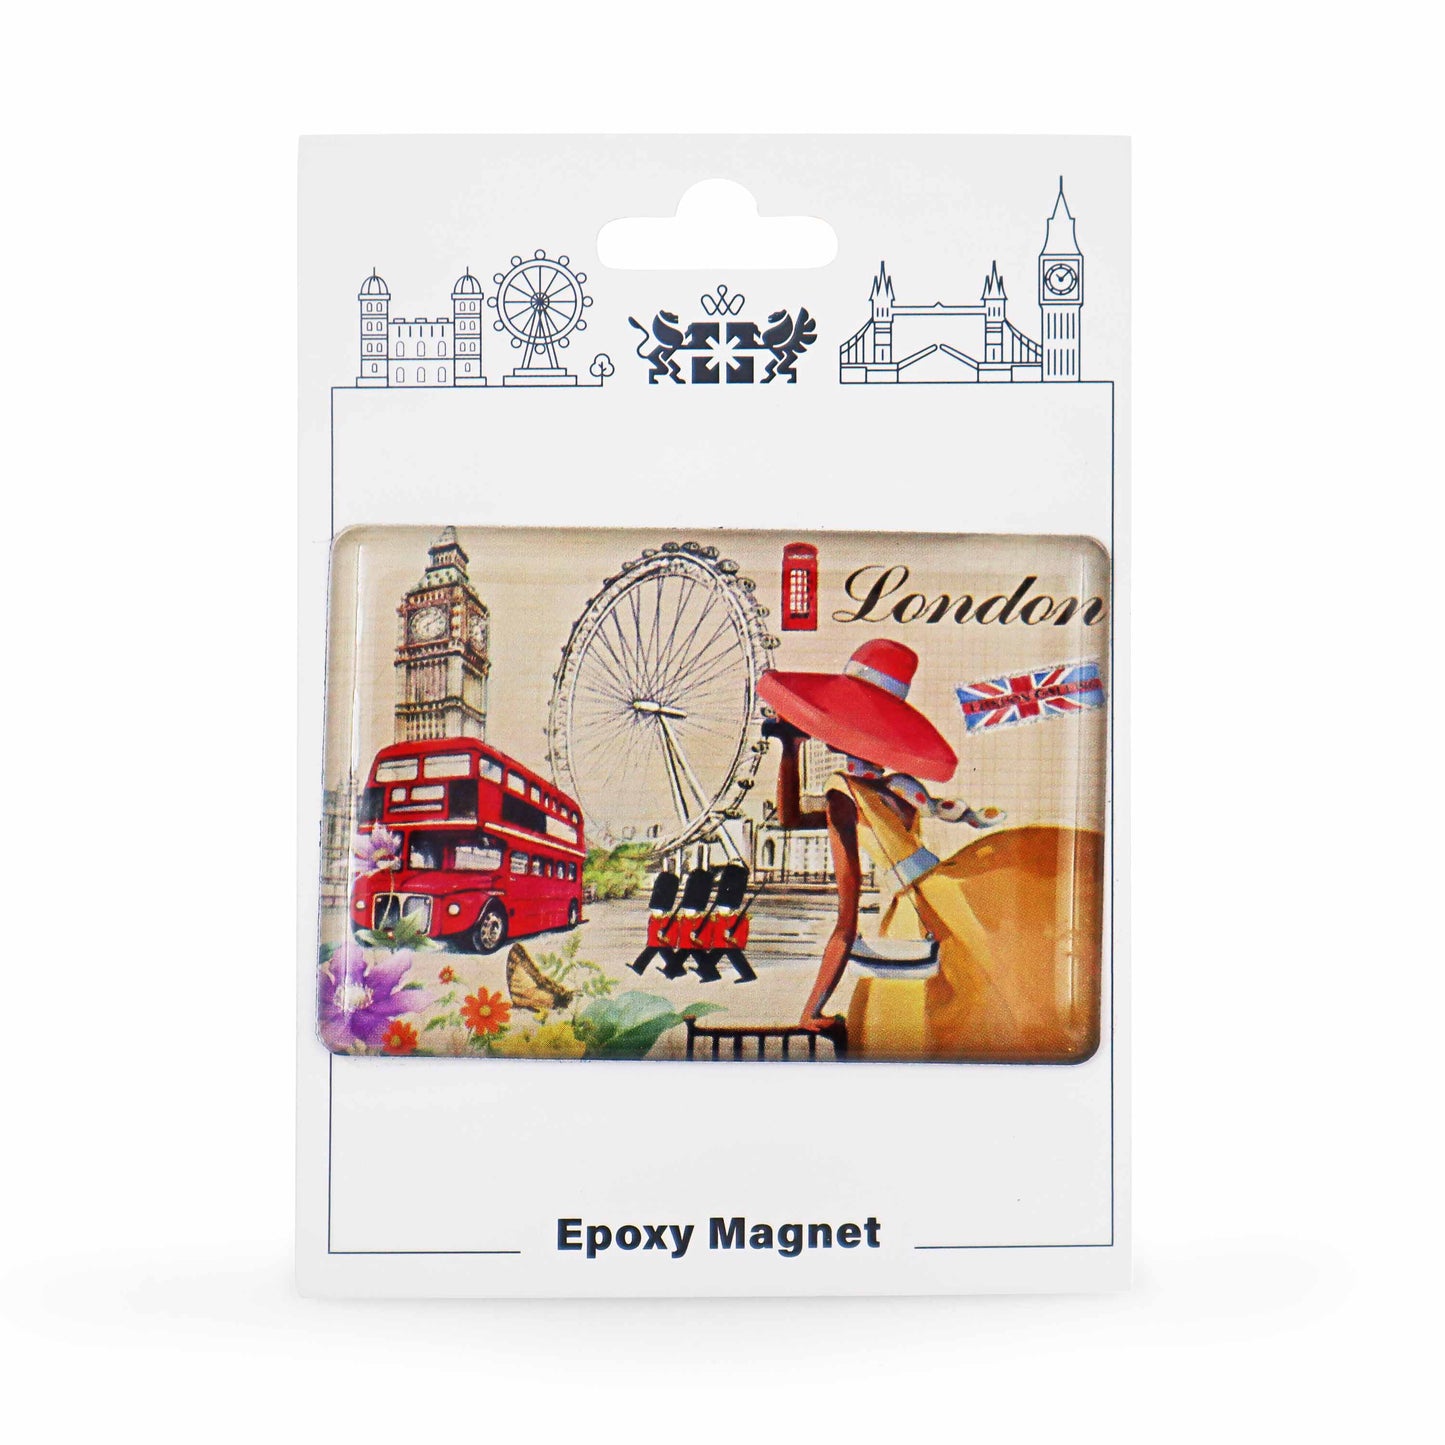 London Souvenir Epoxy Magnet - Design 6 - London Souvenirs Fridge Magnet